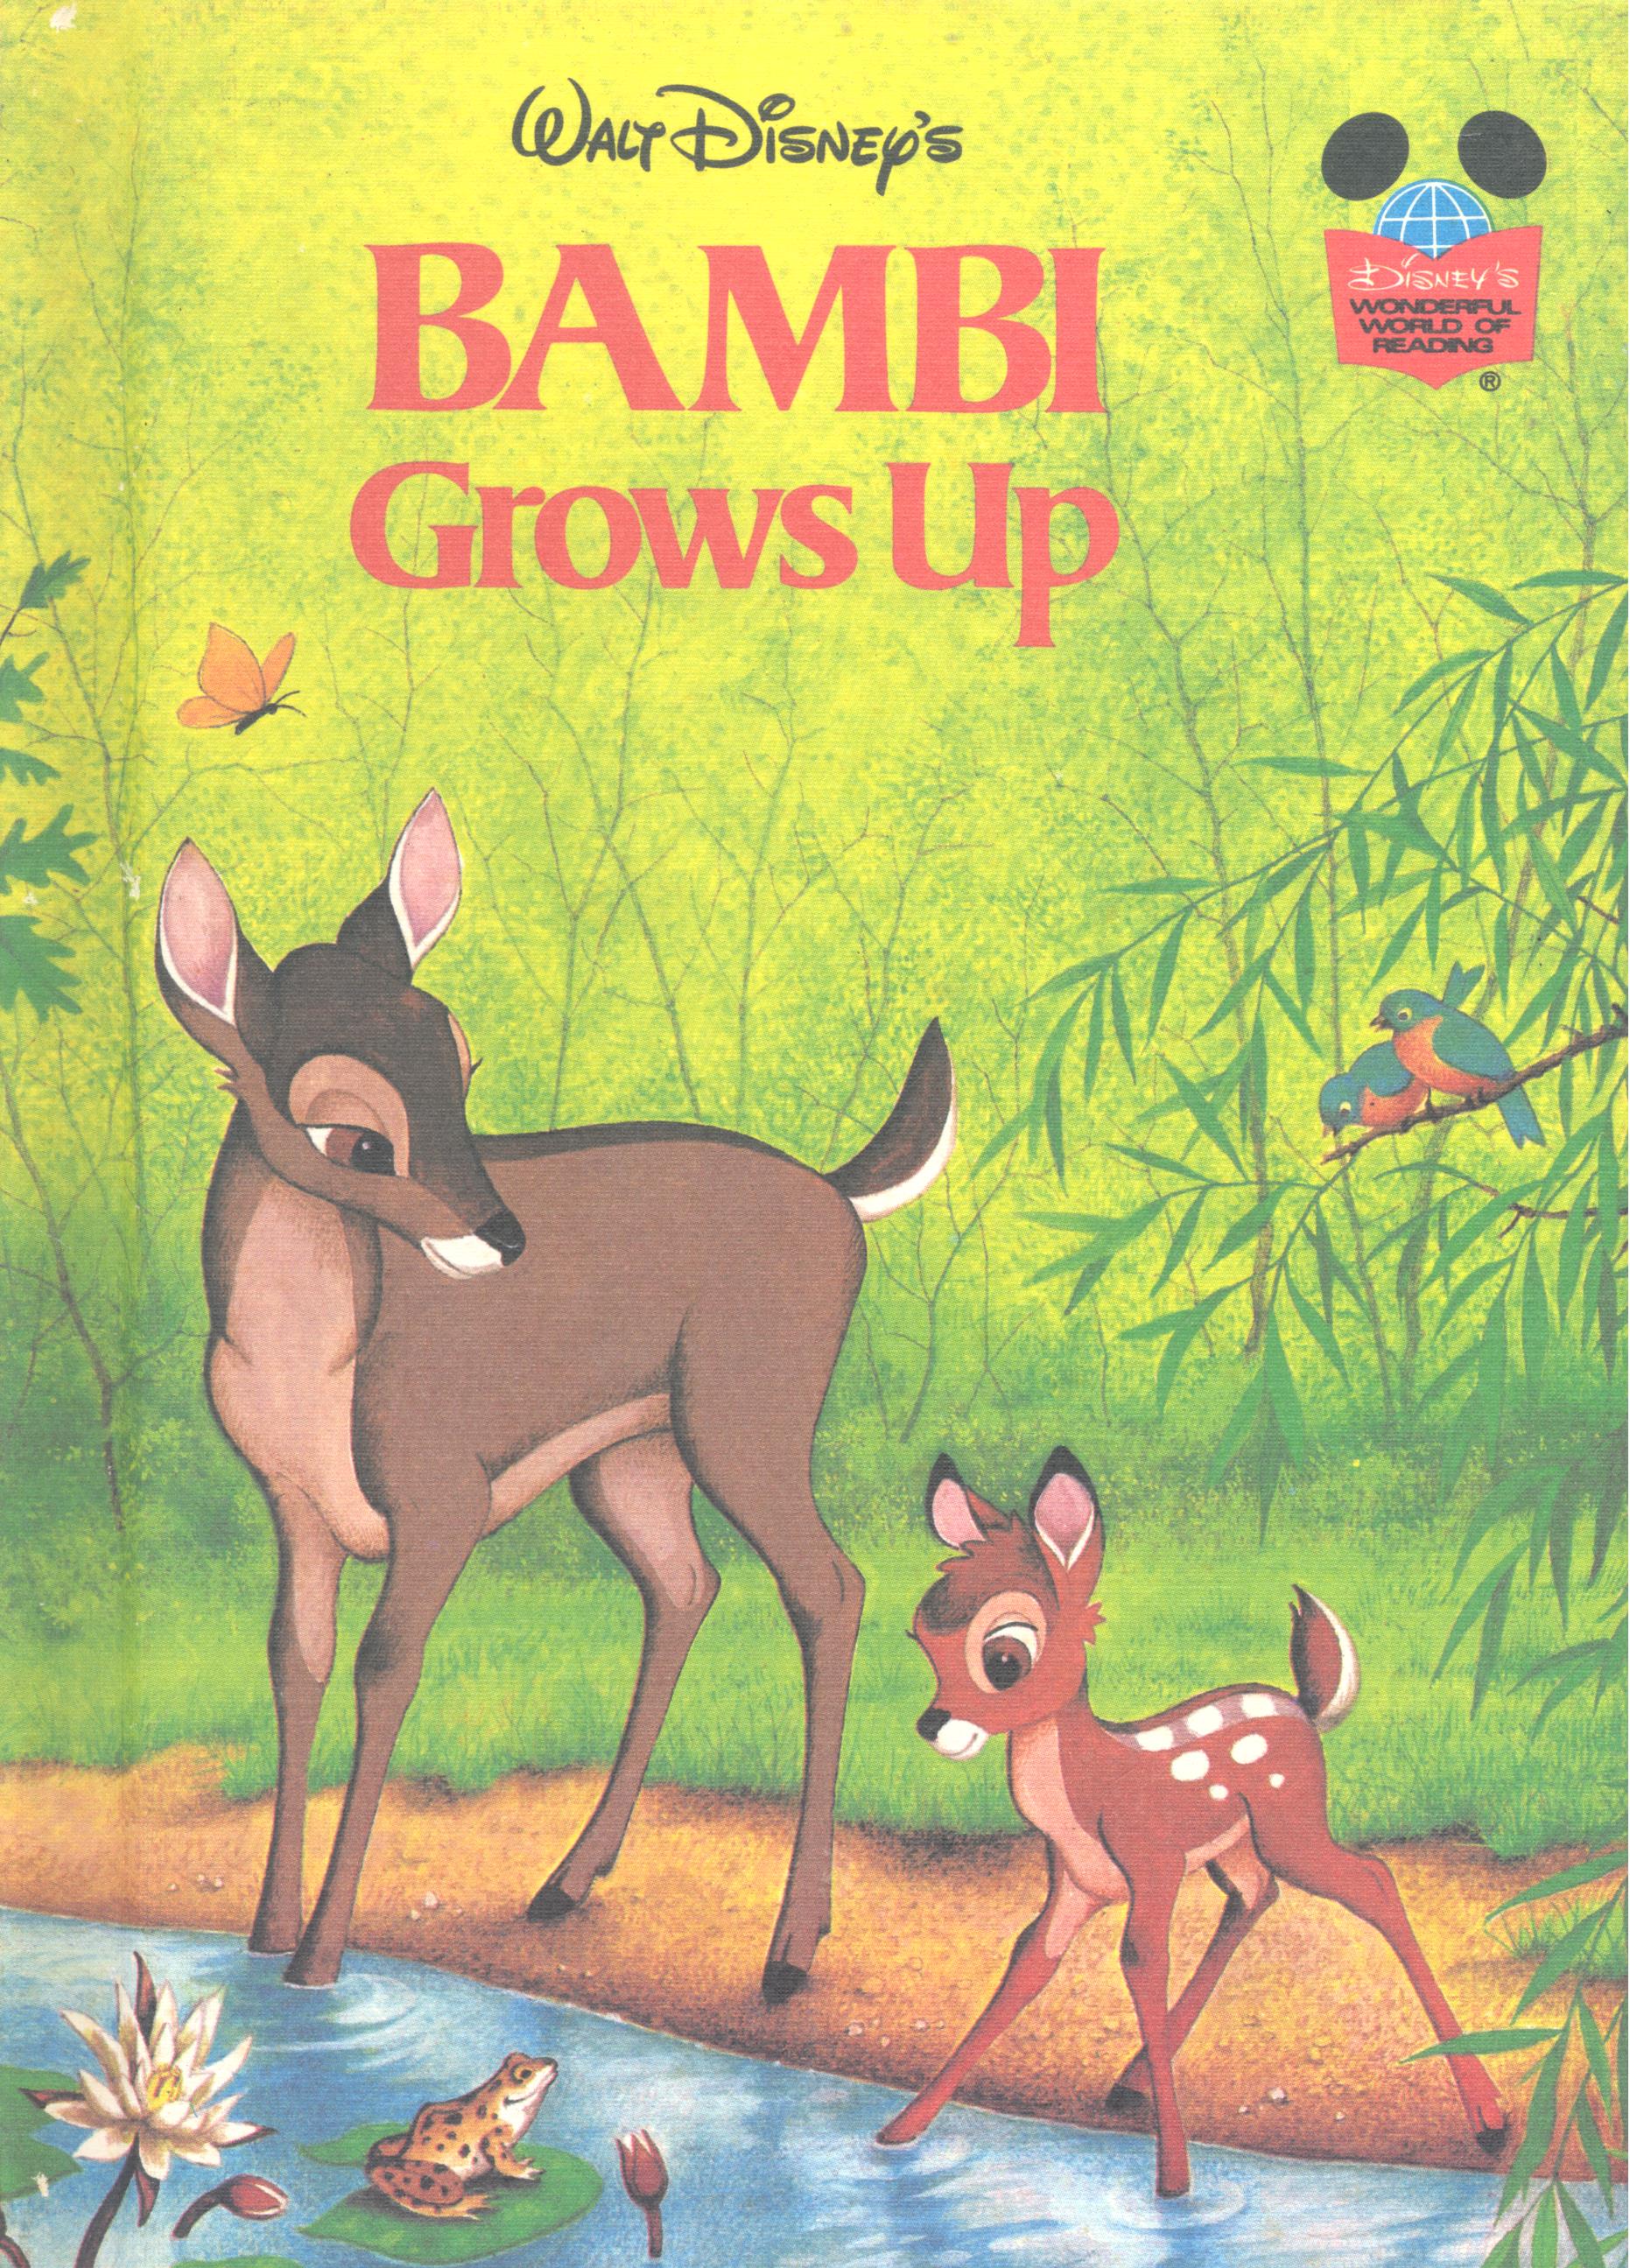 Walt Disney' s Bambi grows up.